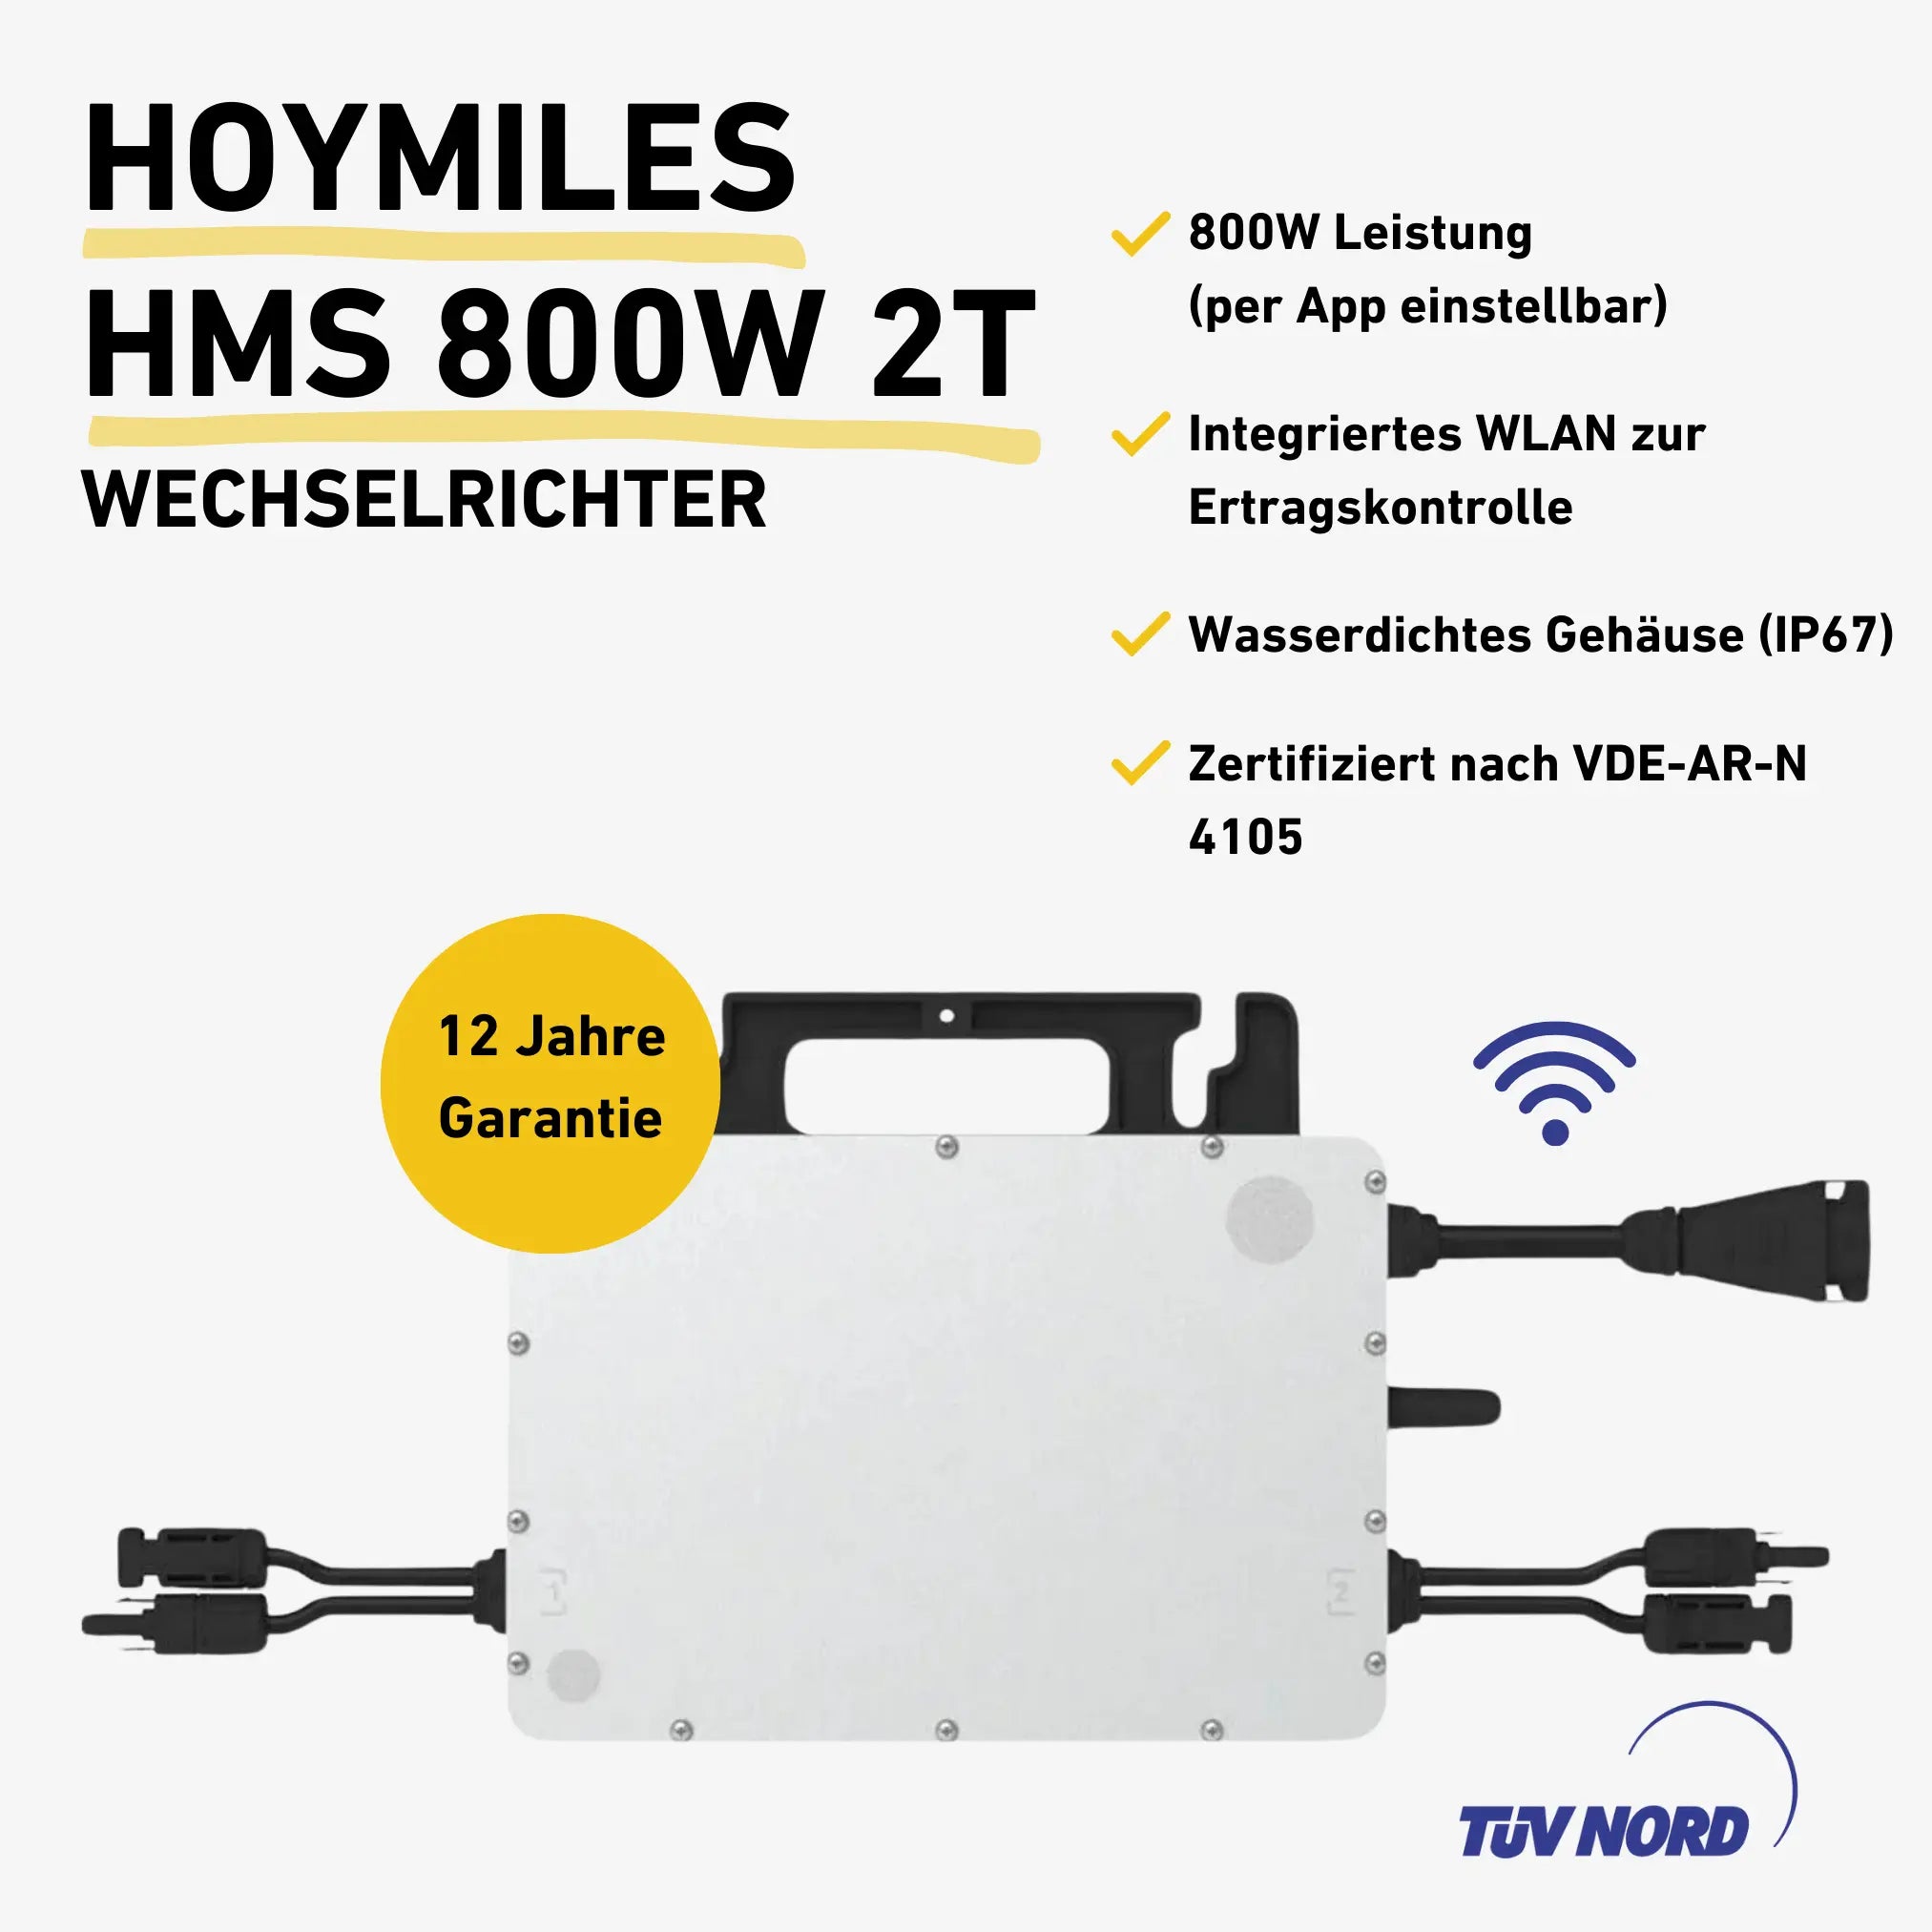 Hoymiles HMS 800W 2T Wechselrichter Produktbild mit Produkteigenschaften